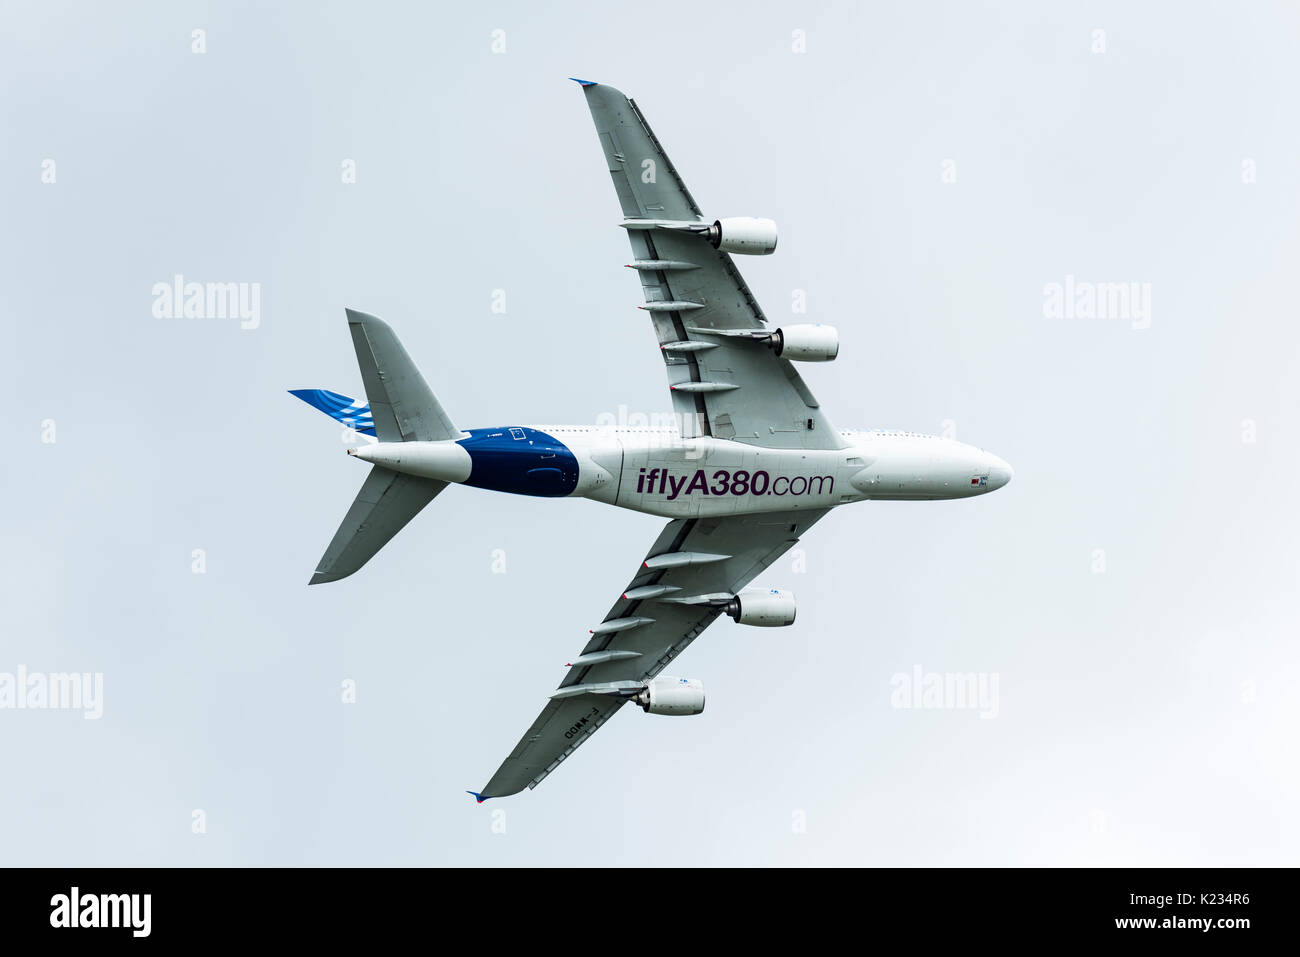 Der Airbus A380, das größte Passagierflugzeug der Welt, während sie fliegt Anzeige an der Farnborough International Air-Show. Stockfoto